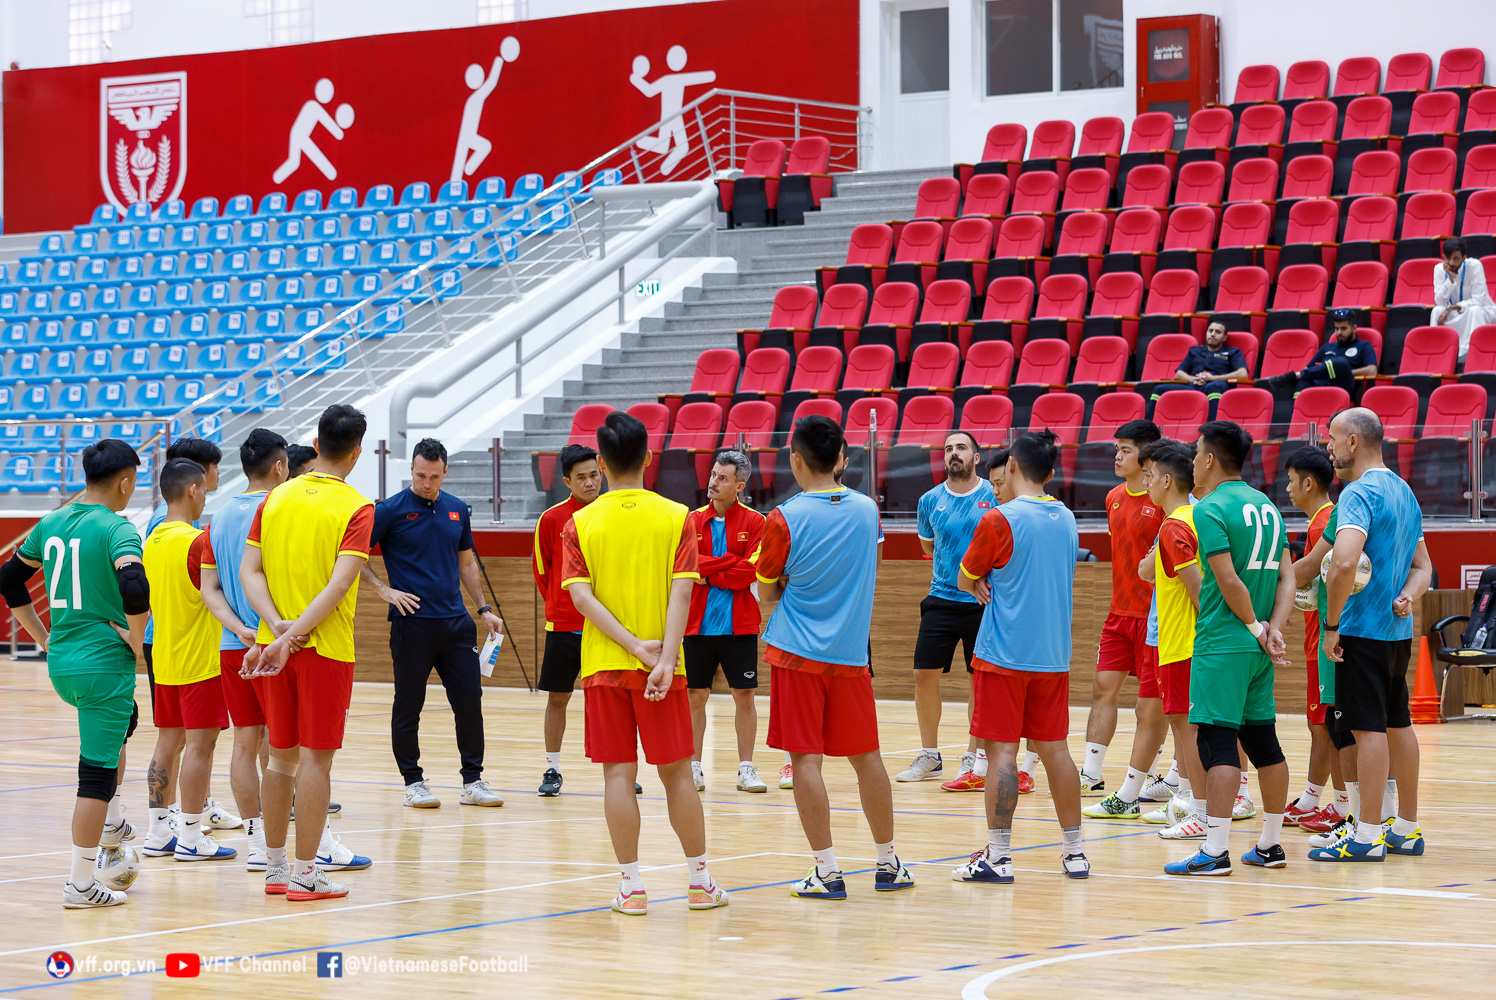 Futsal Việt Nam vs Iran, nhận định bóng đá, Futsal VN vs Iran, nhận định kết quả, Futsal Việt Nam, futsal VN, futsal Iran, keo nha cai, dự đoán bóng đá, Futsal châu Á